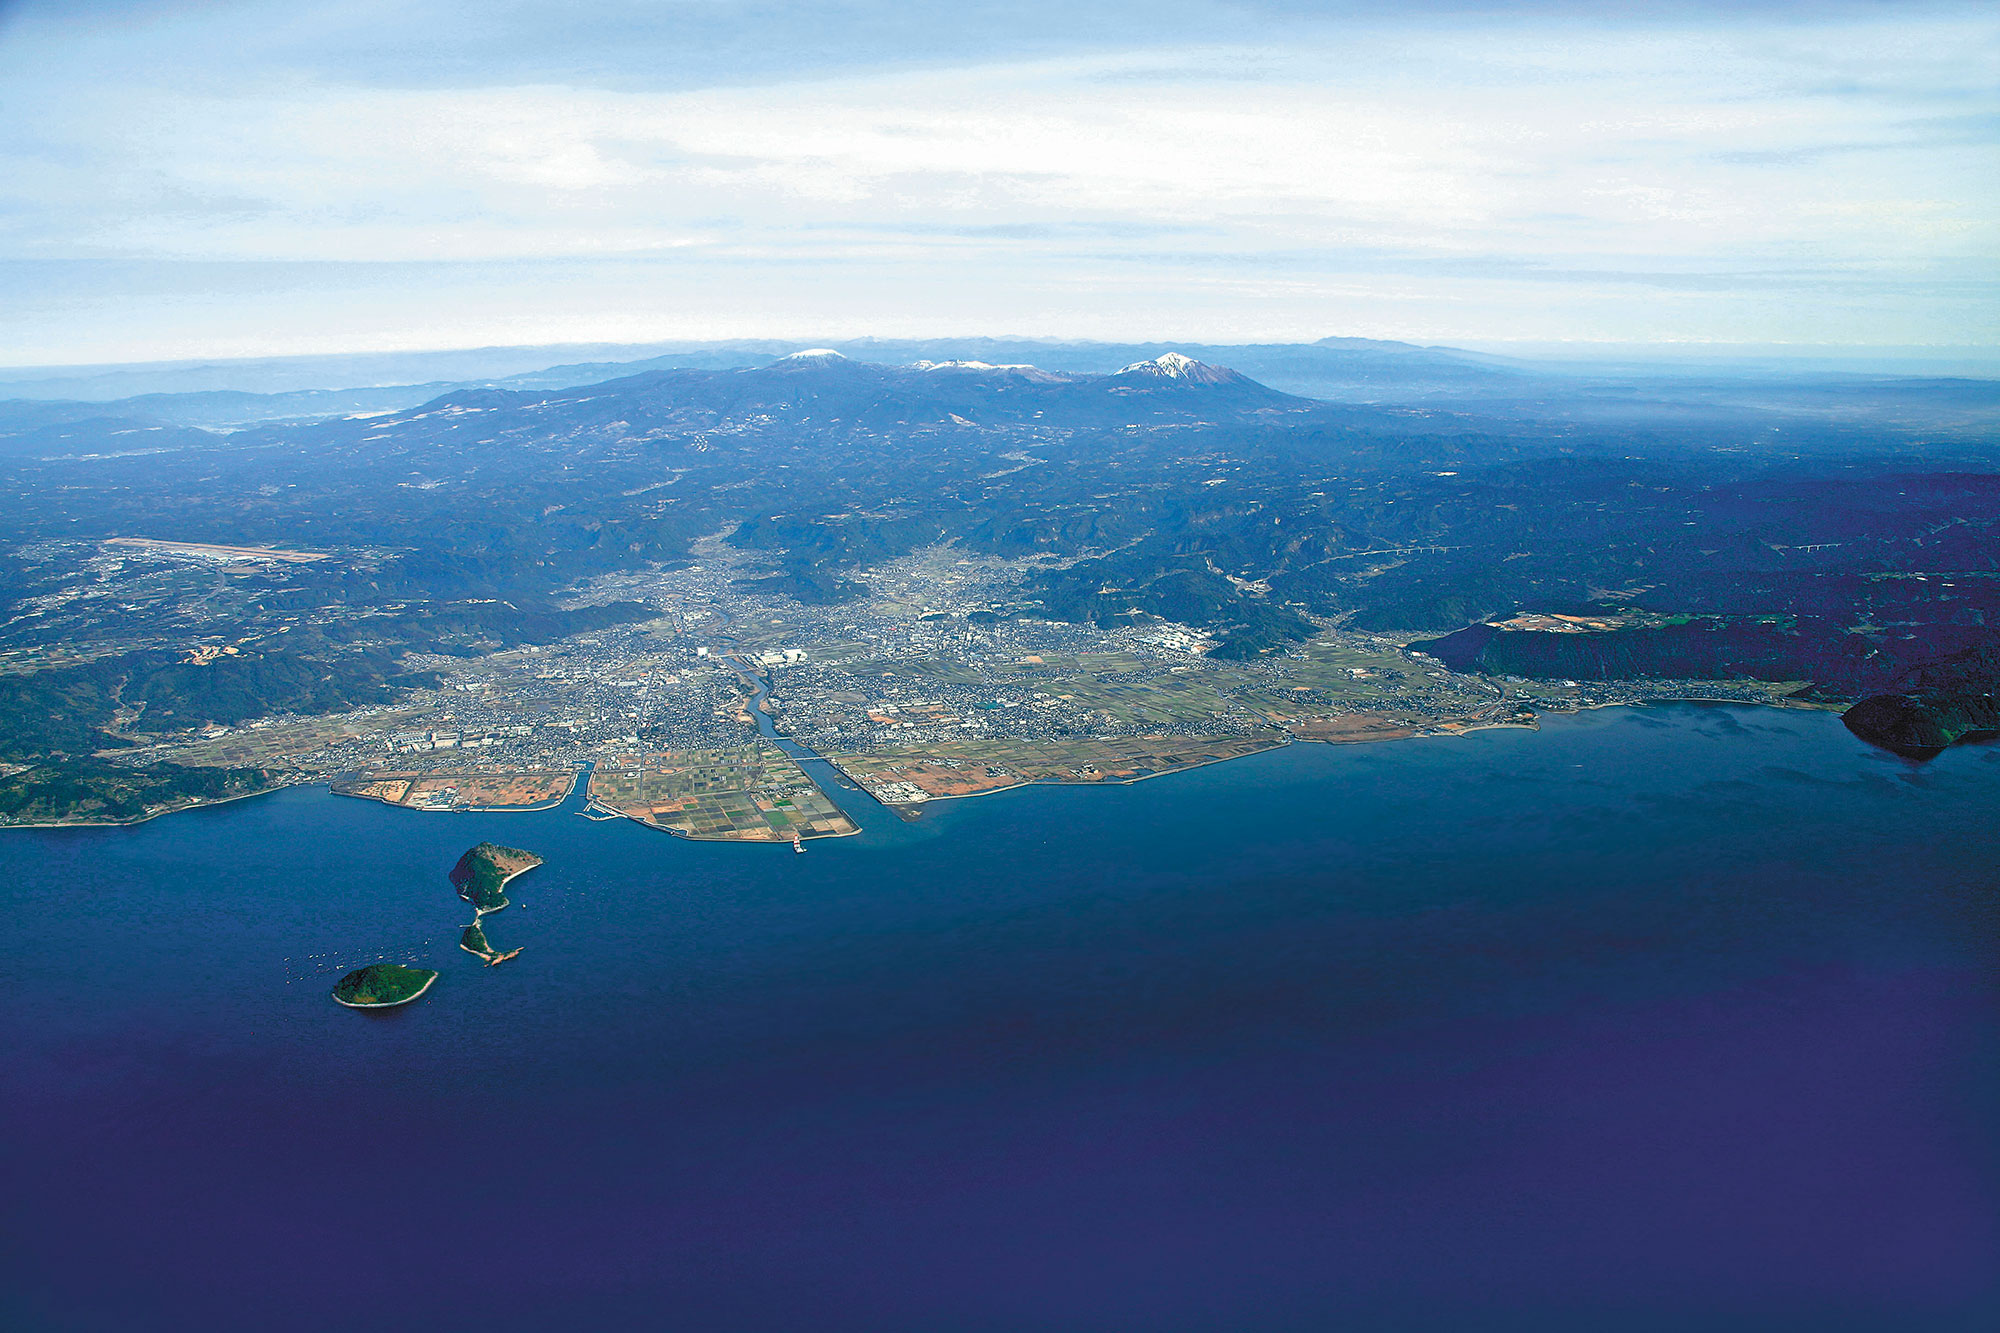 錦江湾（鹿児島湾）上空から見る霧島山とそのふもとに広がる霧島市。霧島市は、錦江湾の標高0ｍから韓国岳の山頂まで1700ｍの標高差をもつ。